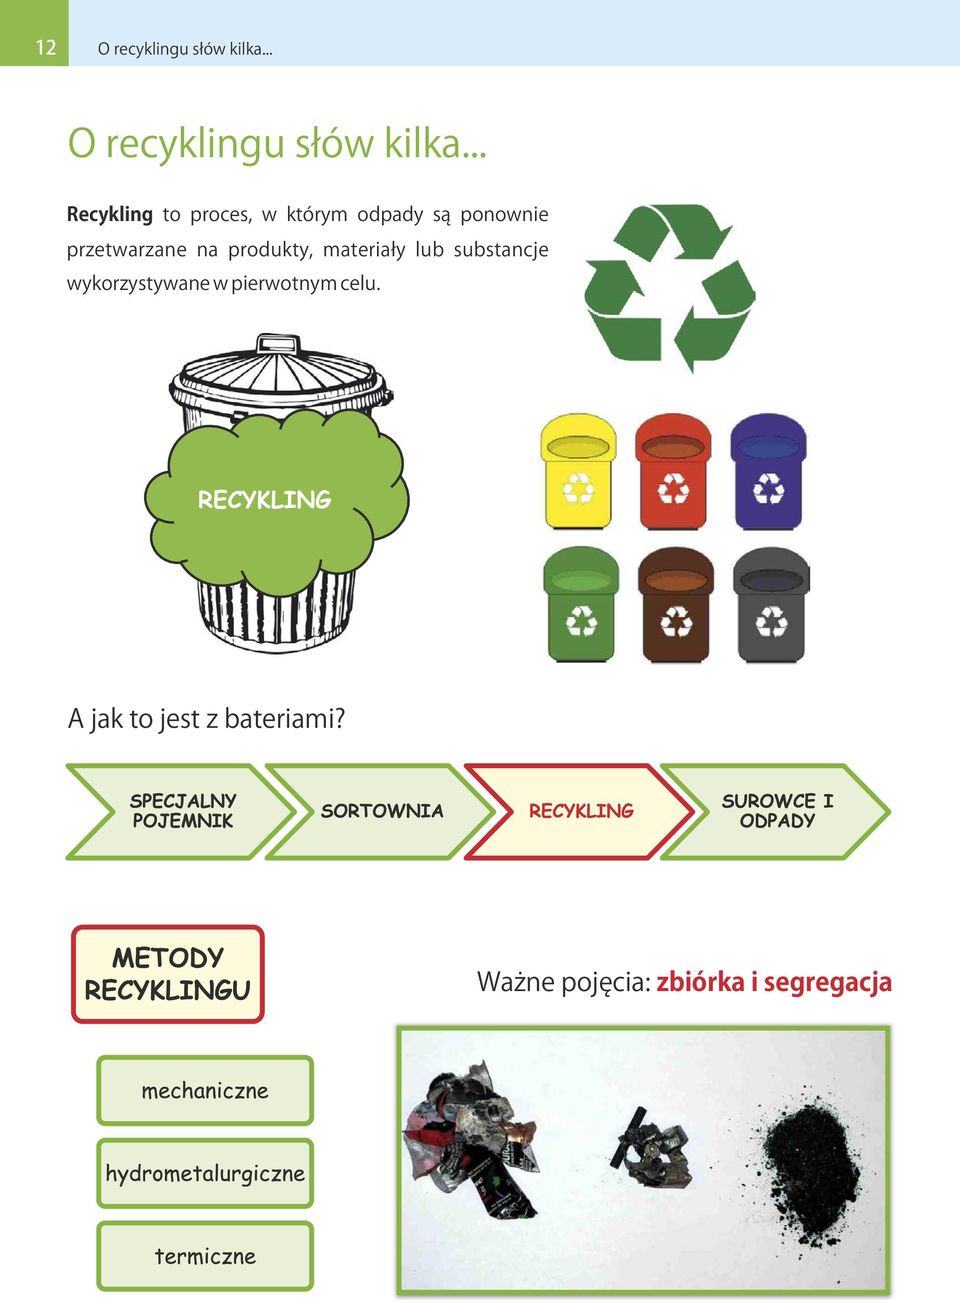 .. Recykling to proces, w którym odpady są ponownie